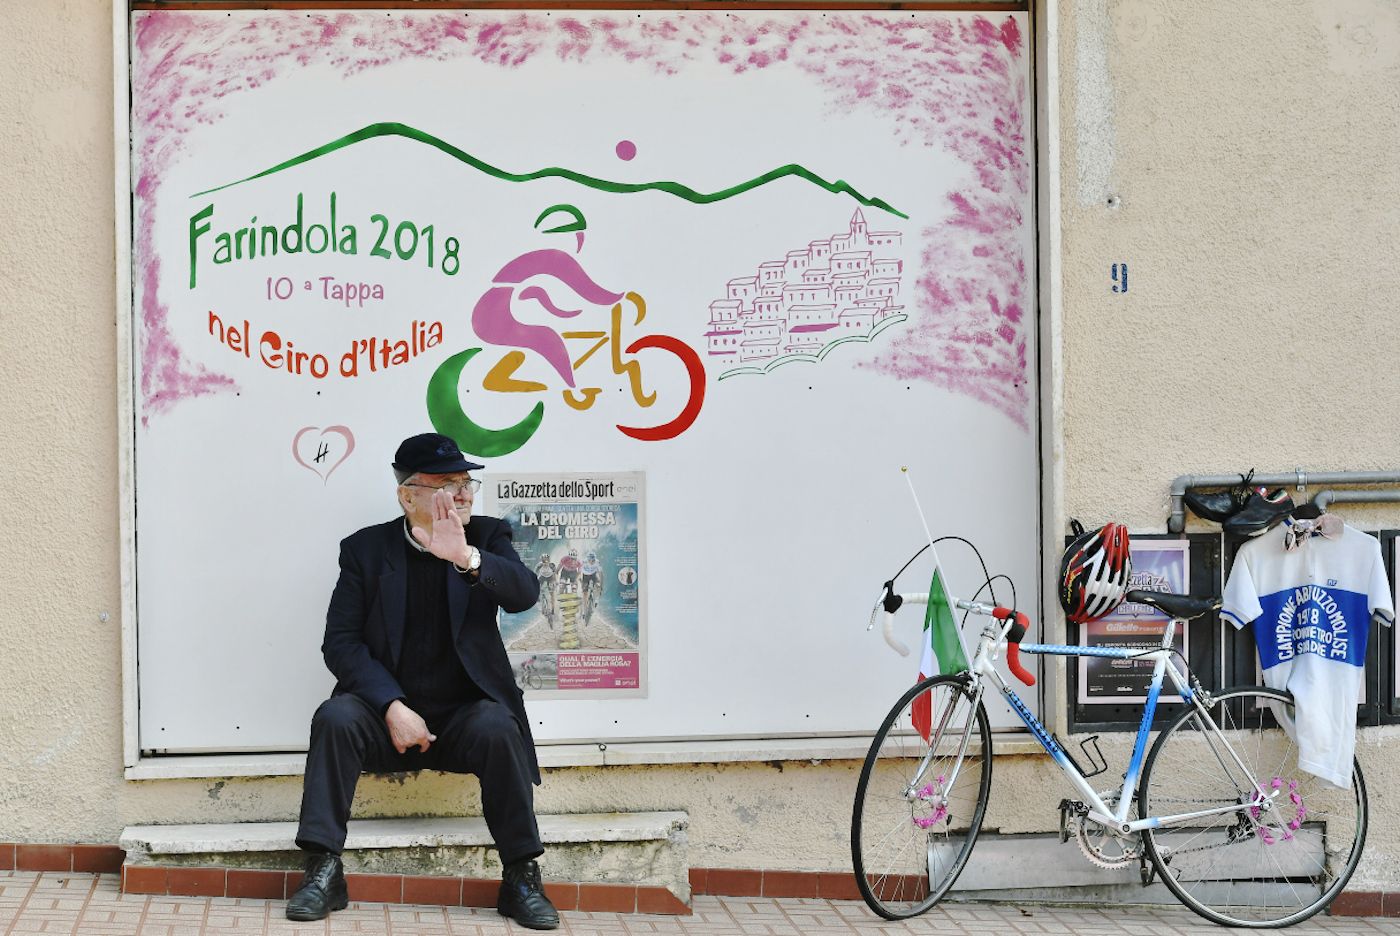 ASO prosi o skrócenie Giro d’Italia, Włosi mówią temu „nie”